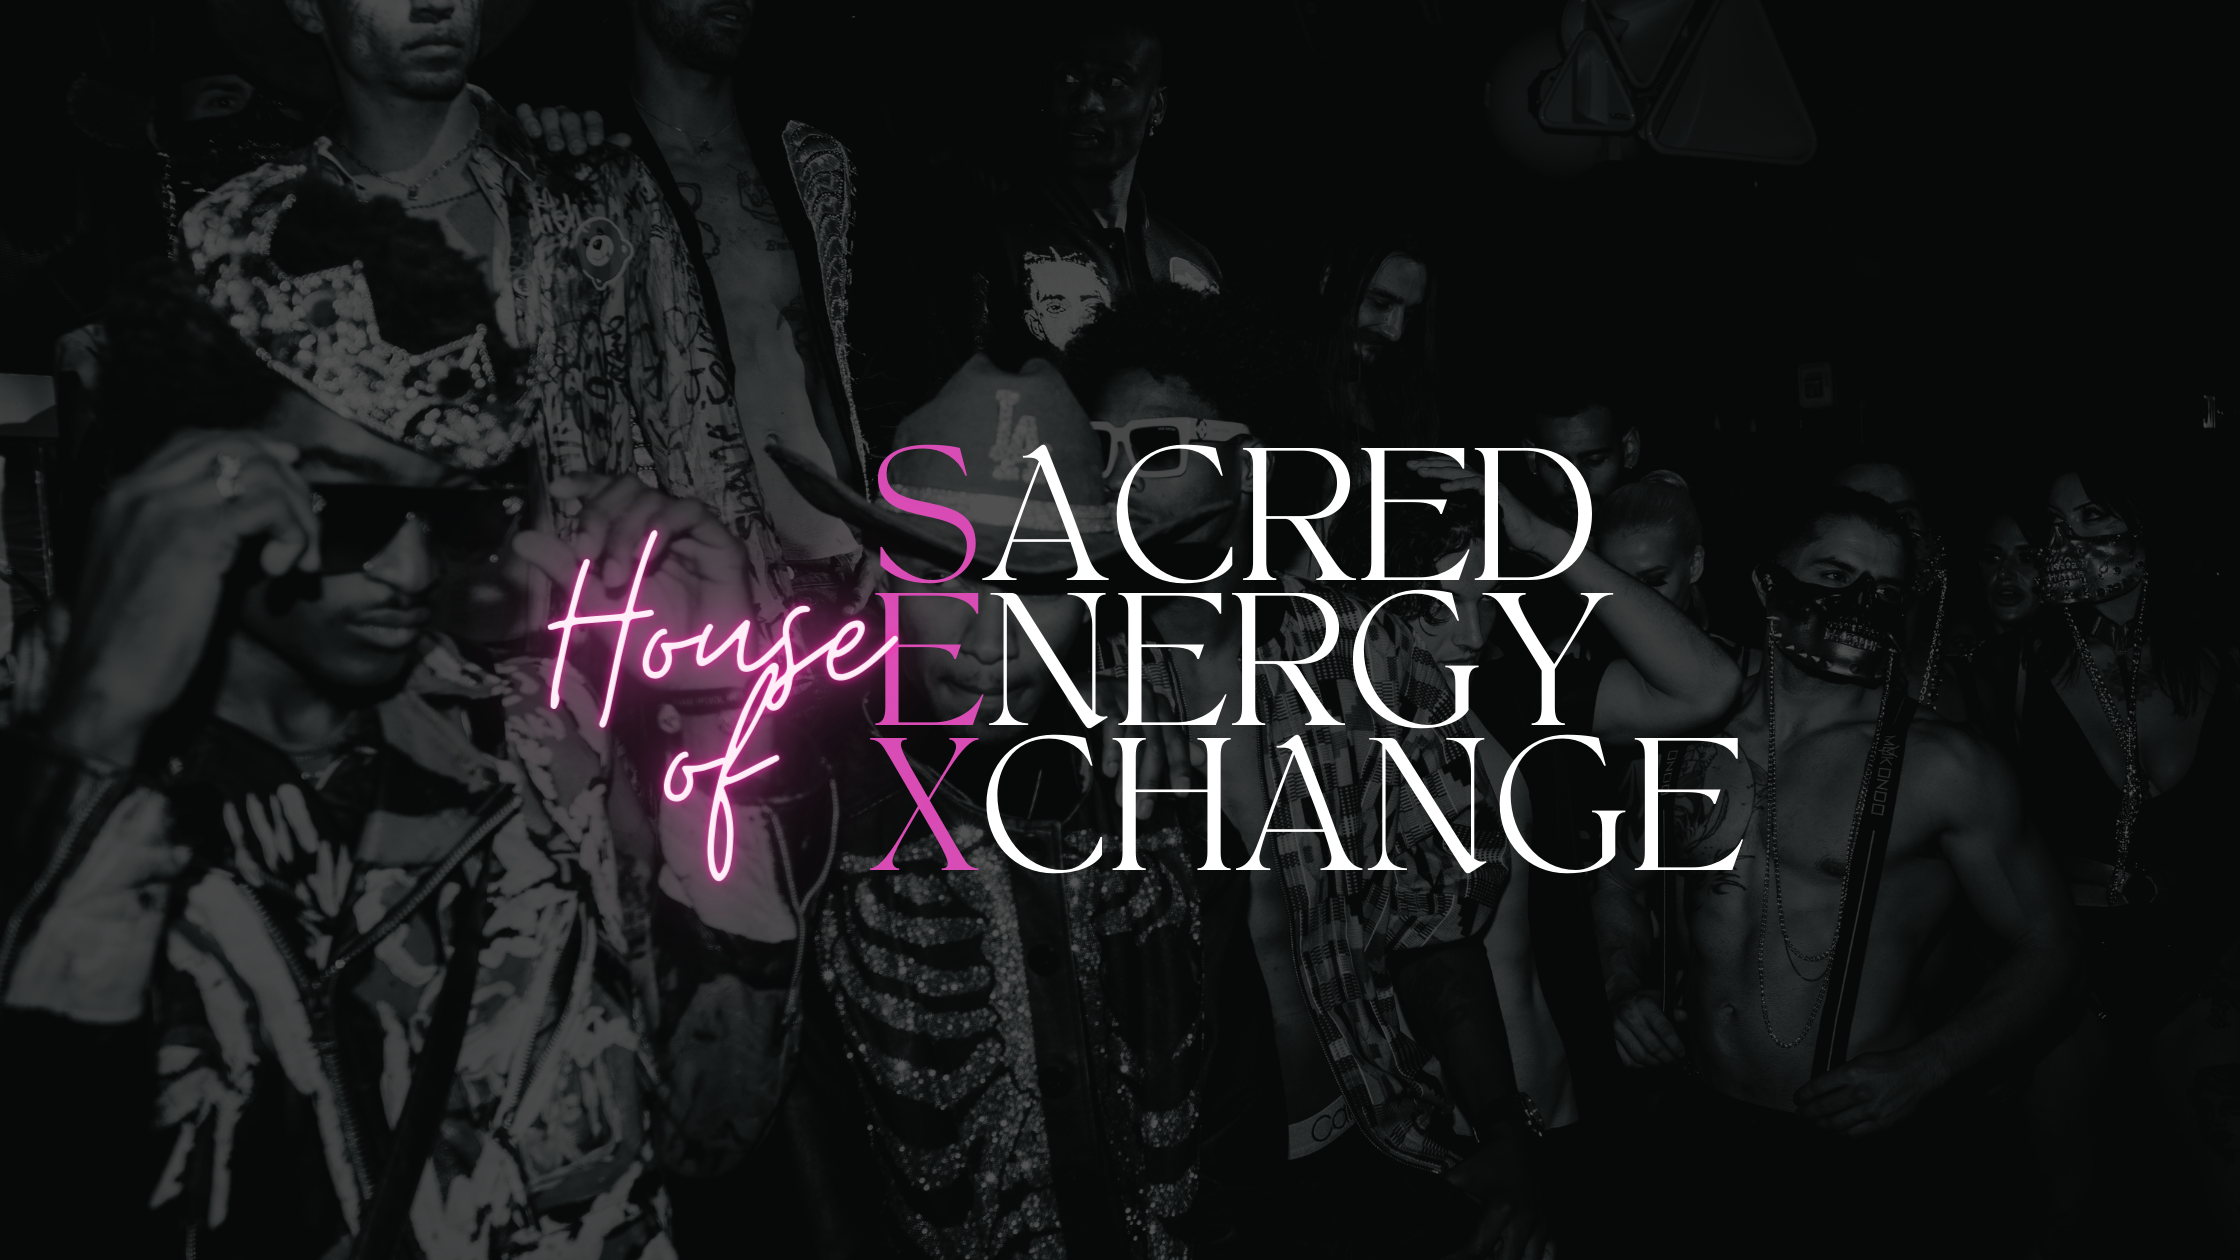 House of Sacred Energy Xchange